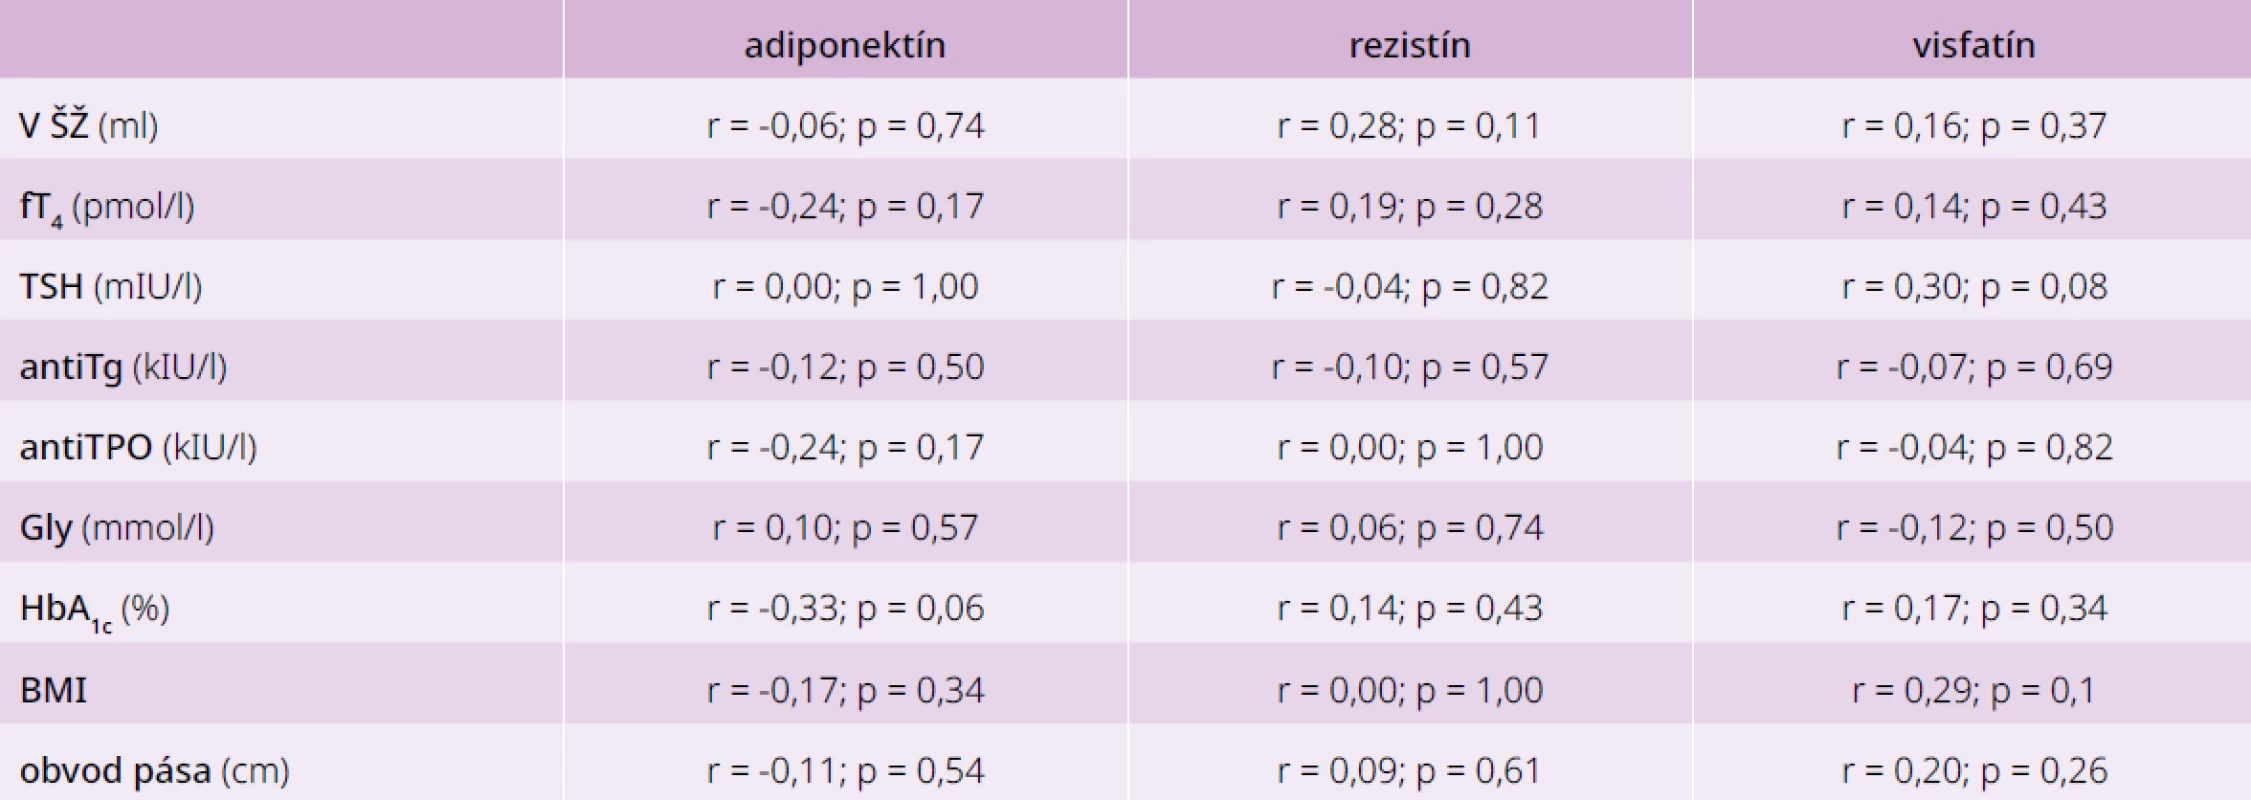 Korelácie medzi jednotlivými adipokínmi a parametrami glycidového a tyroidálneho
metabolizmu u pacientov bez poruchy glukózového a tyroidálneho metabolizmu